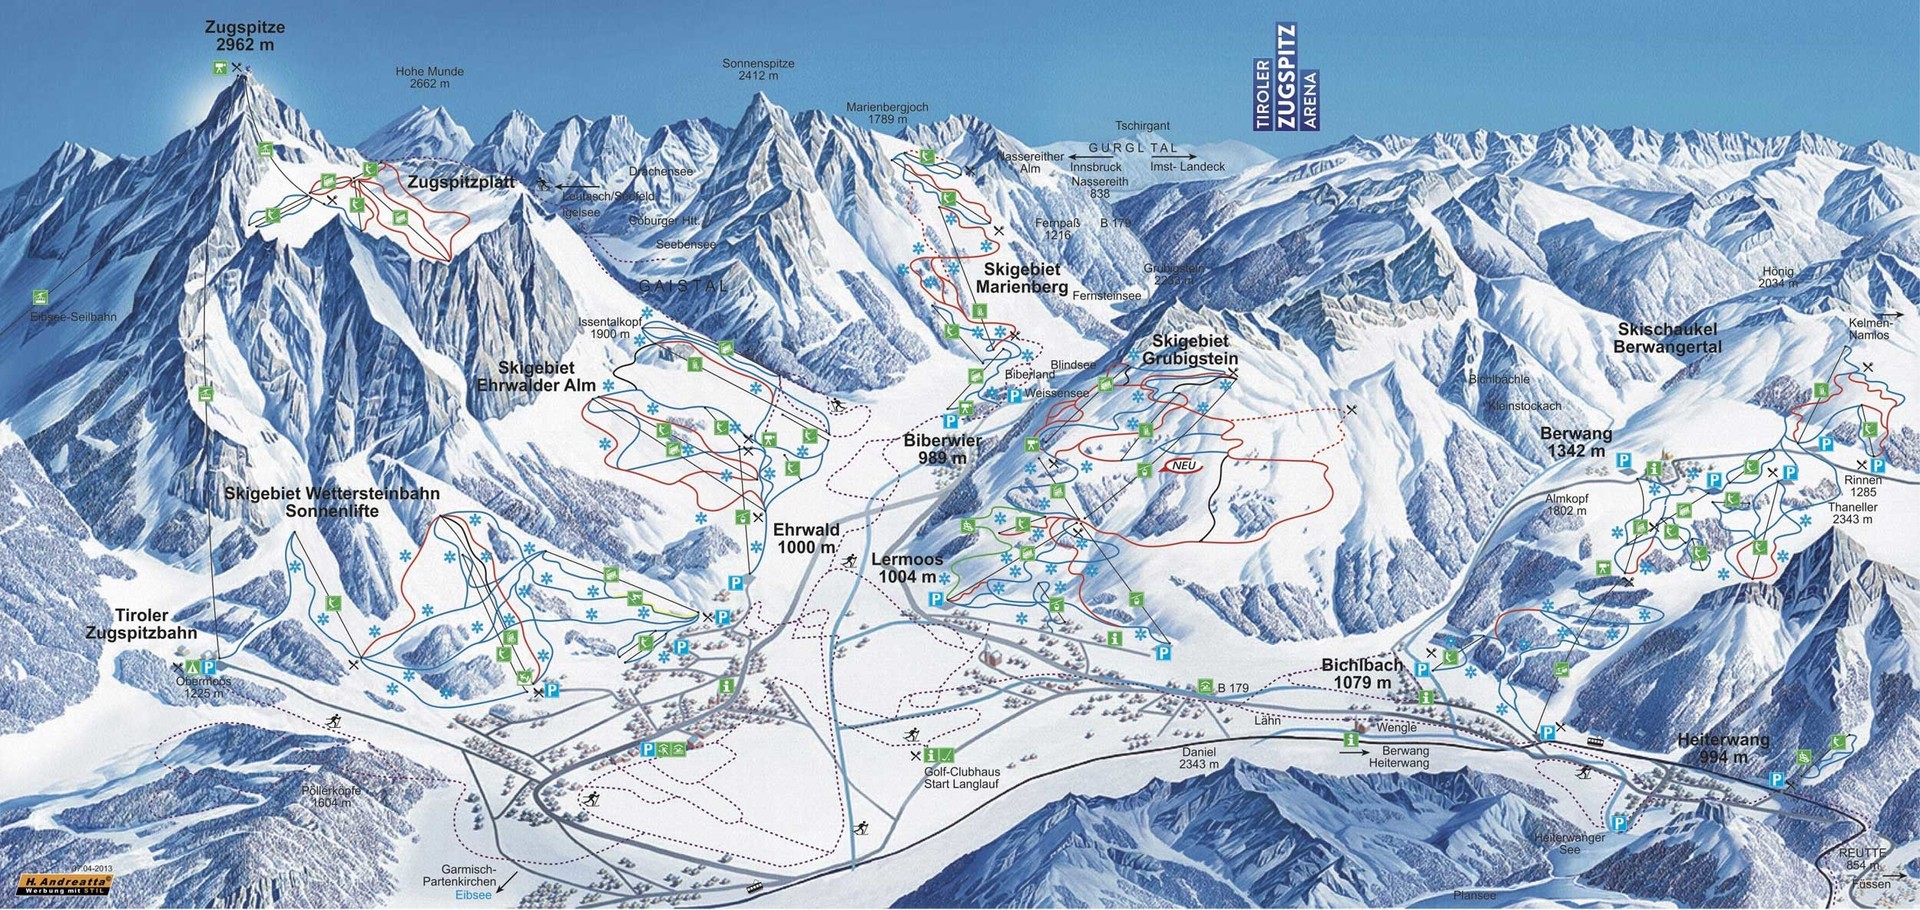 15 лучших горнолыжных курортов в Альпах для начинающих 